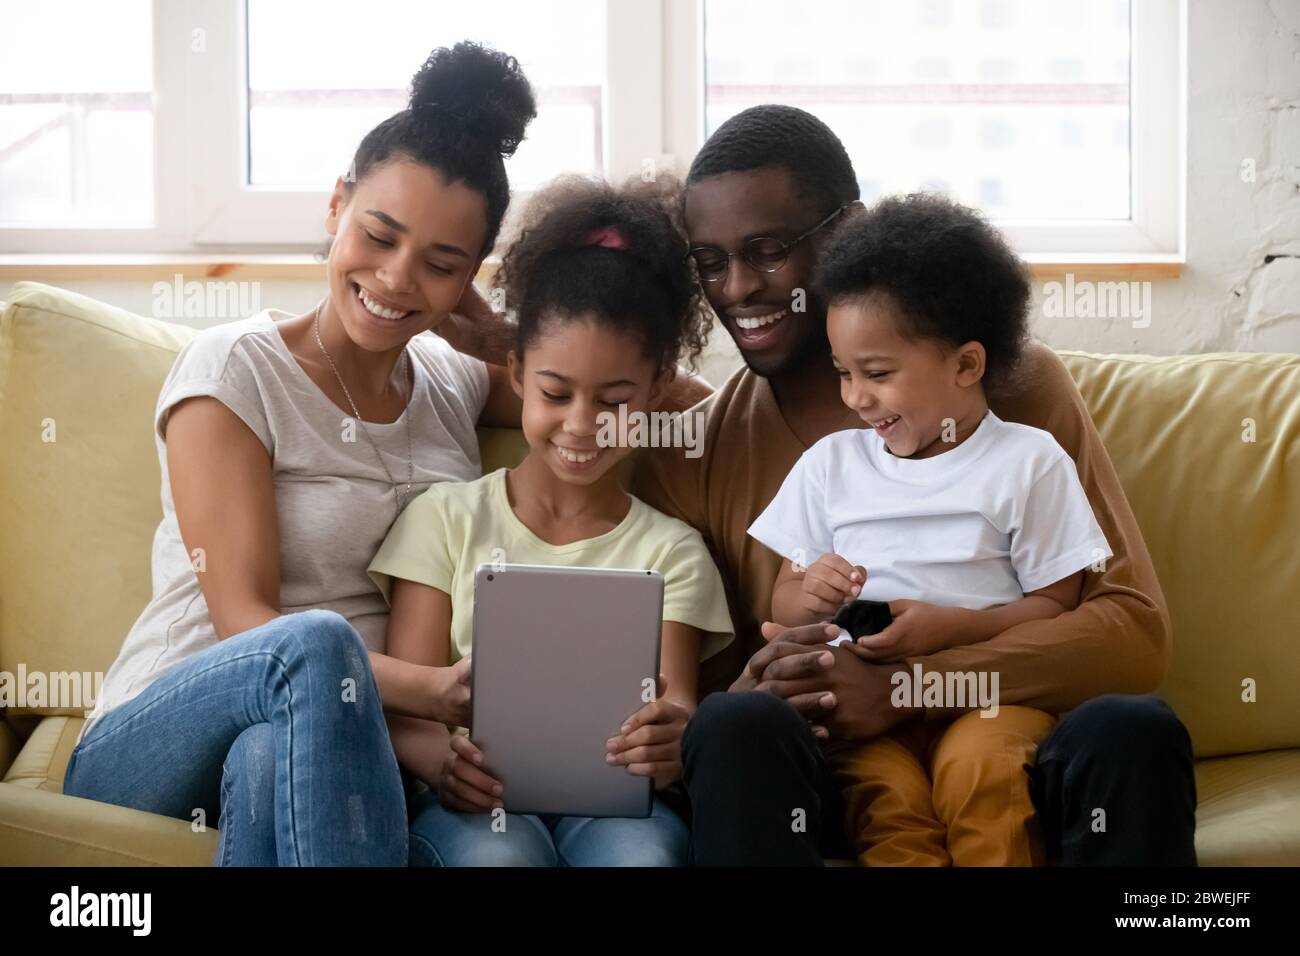 La famiglia africana con i bambini passa del tempo libero utilizzando il dispositivo tablet Foto Stock